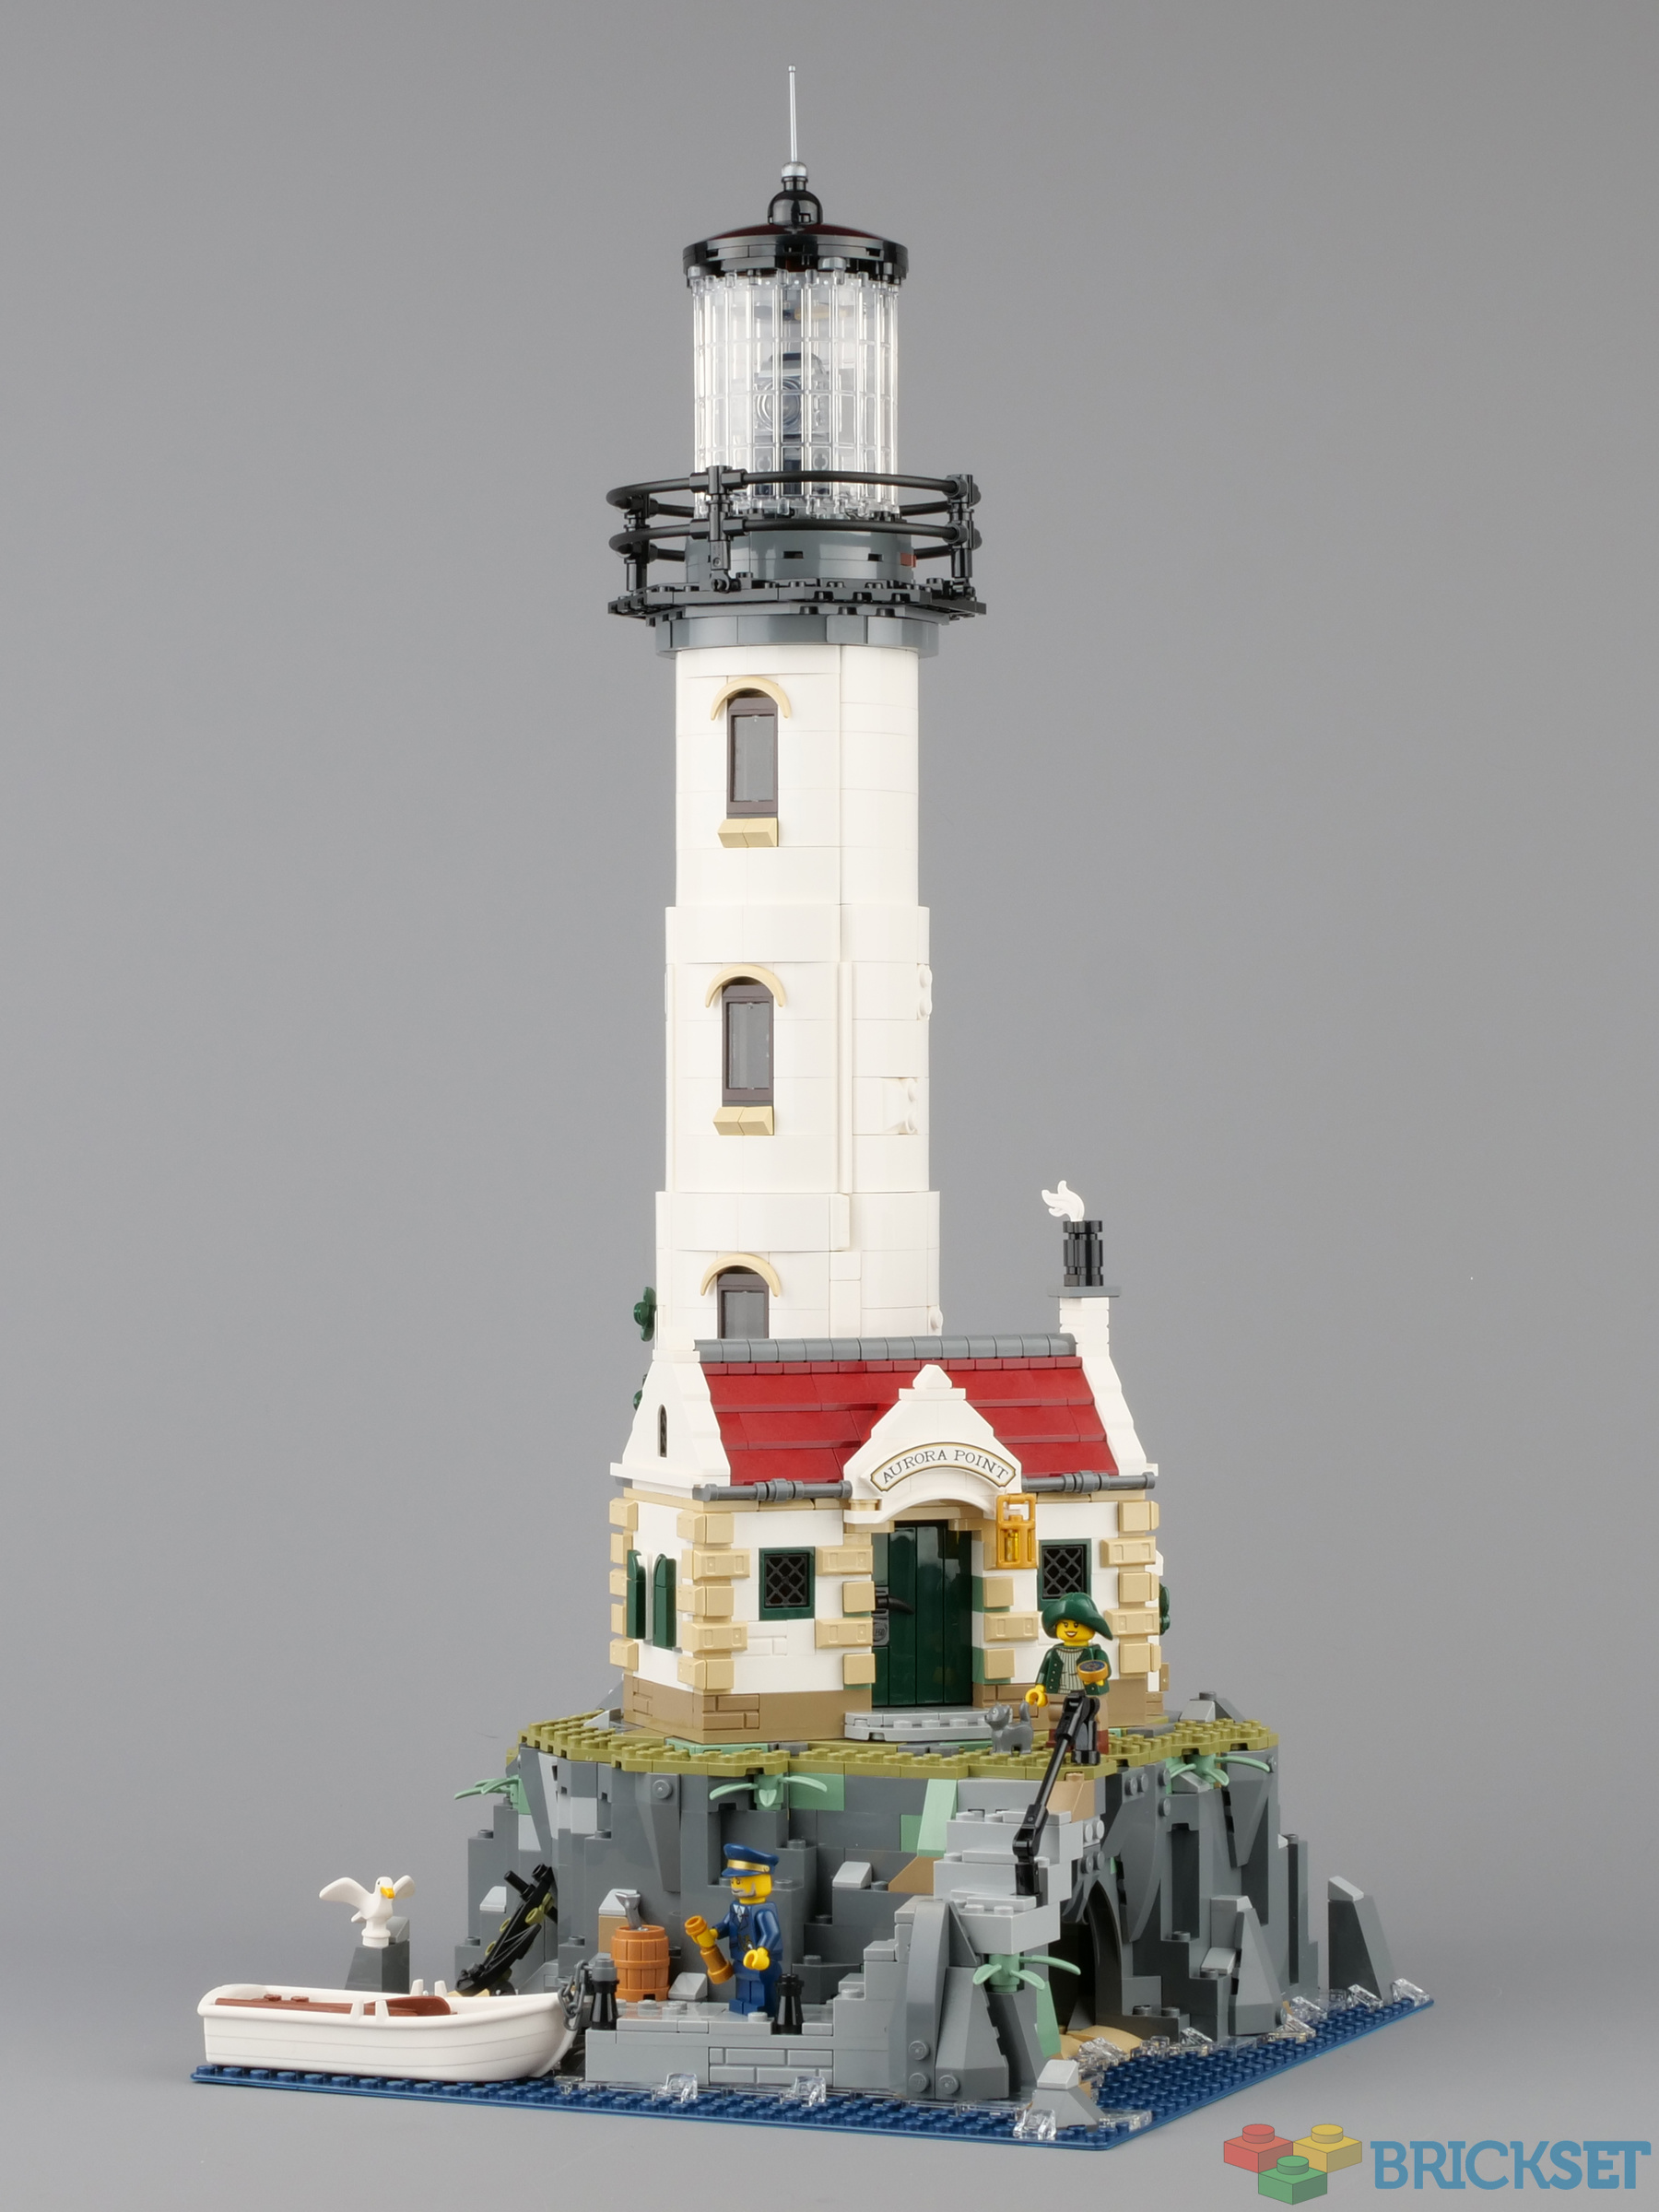 LEGO 21335 Motorised Lighthouse review